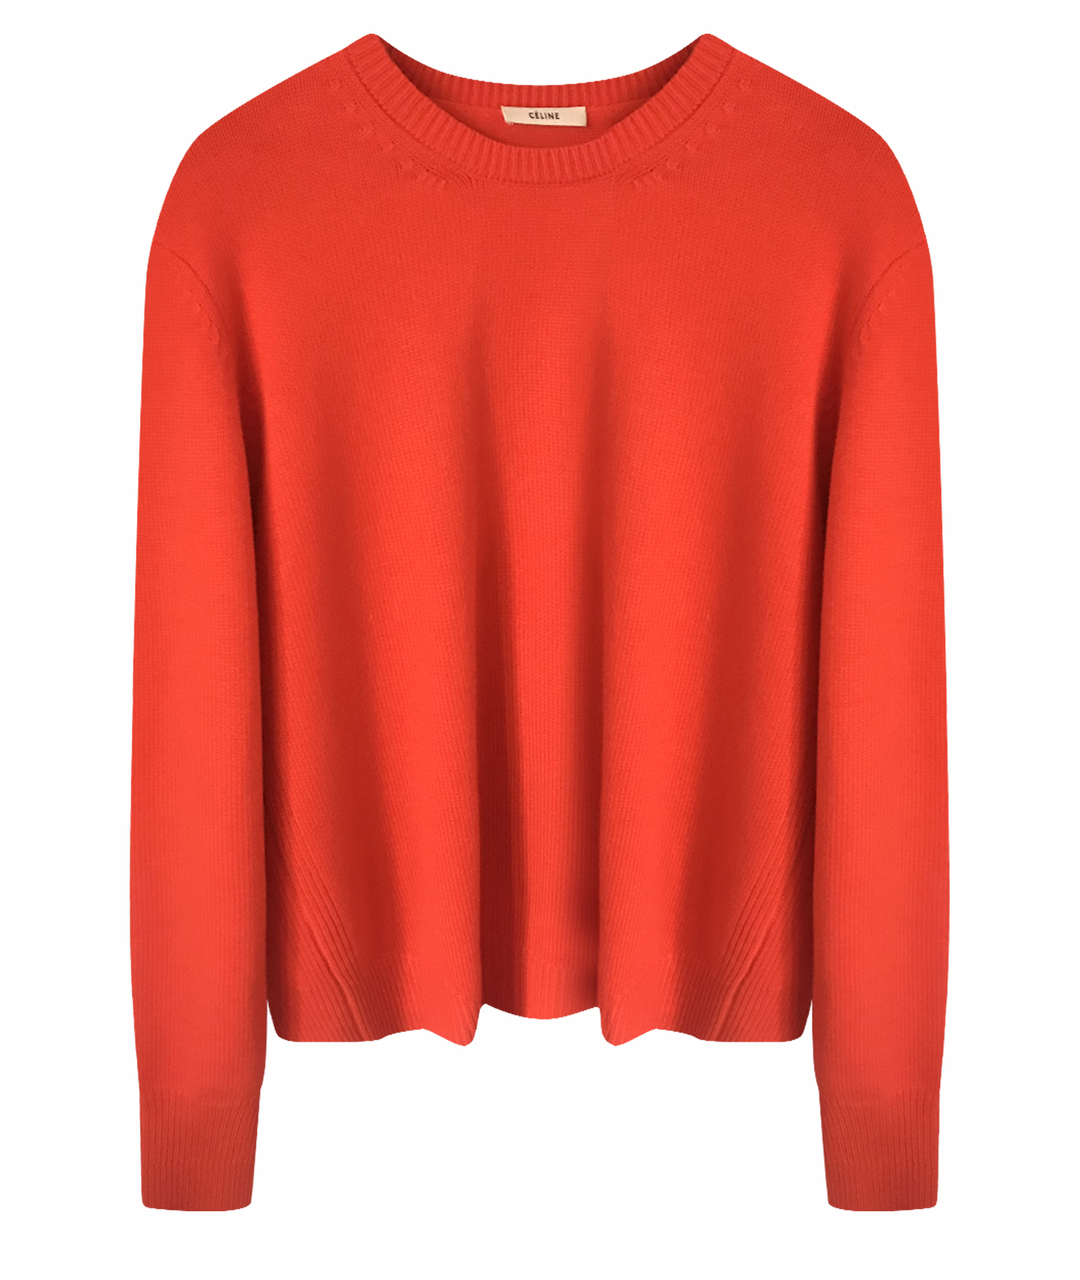 CELINE PRE-OWNED Оранжевый кашемировый джемпер / свитер, фото 1